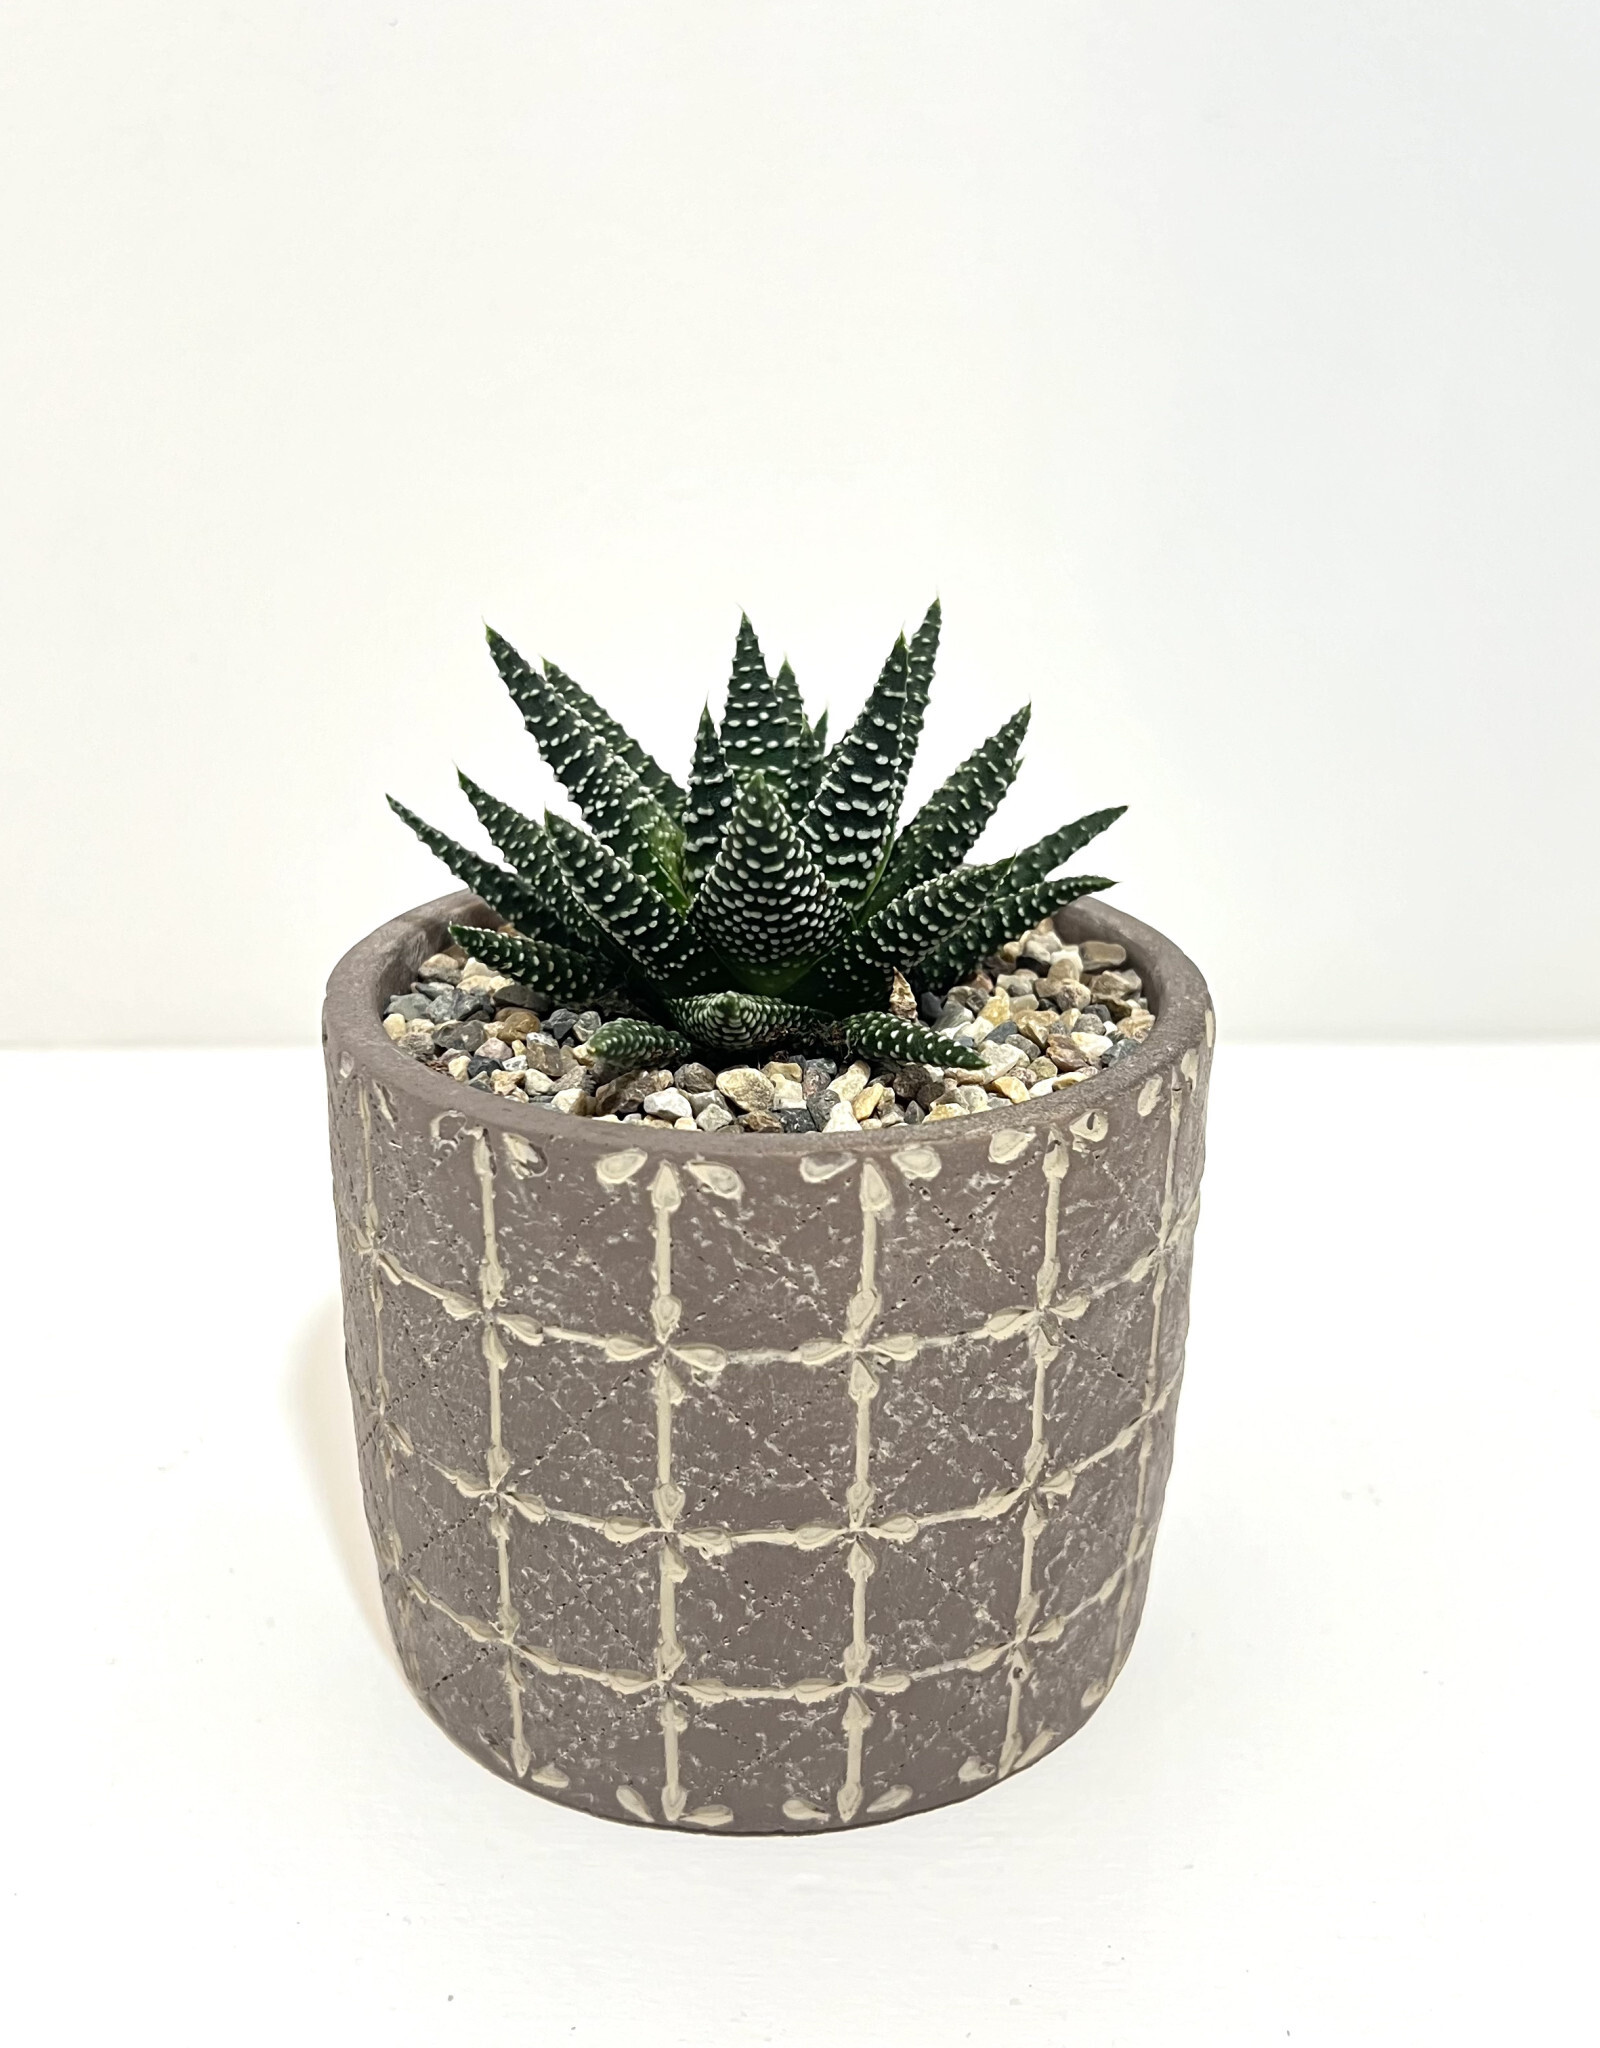 4" Succulent in Bricks Round Pot